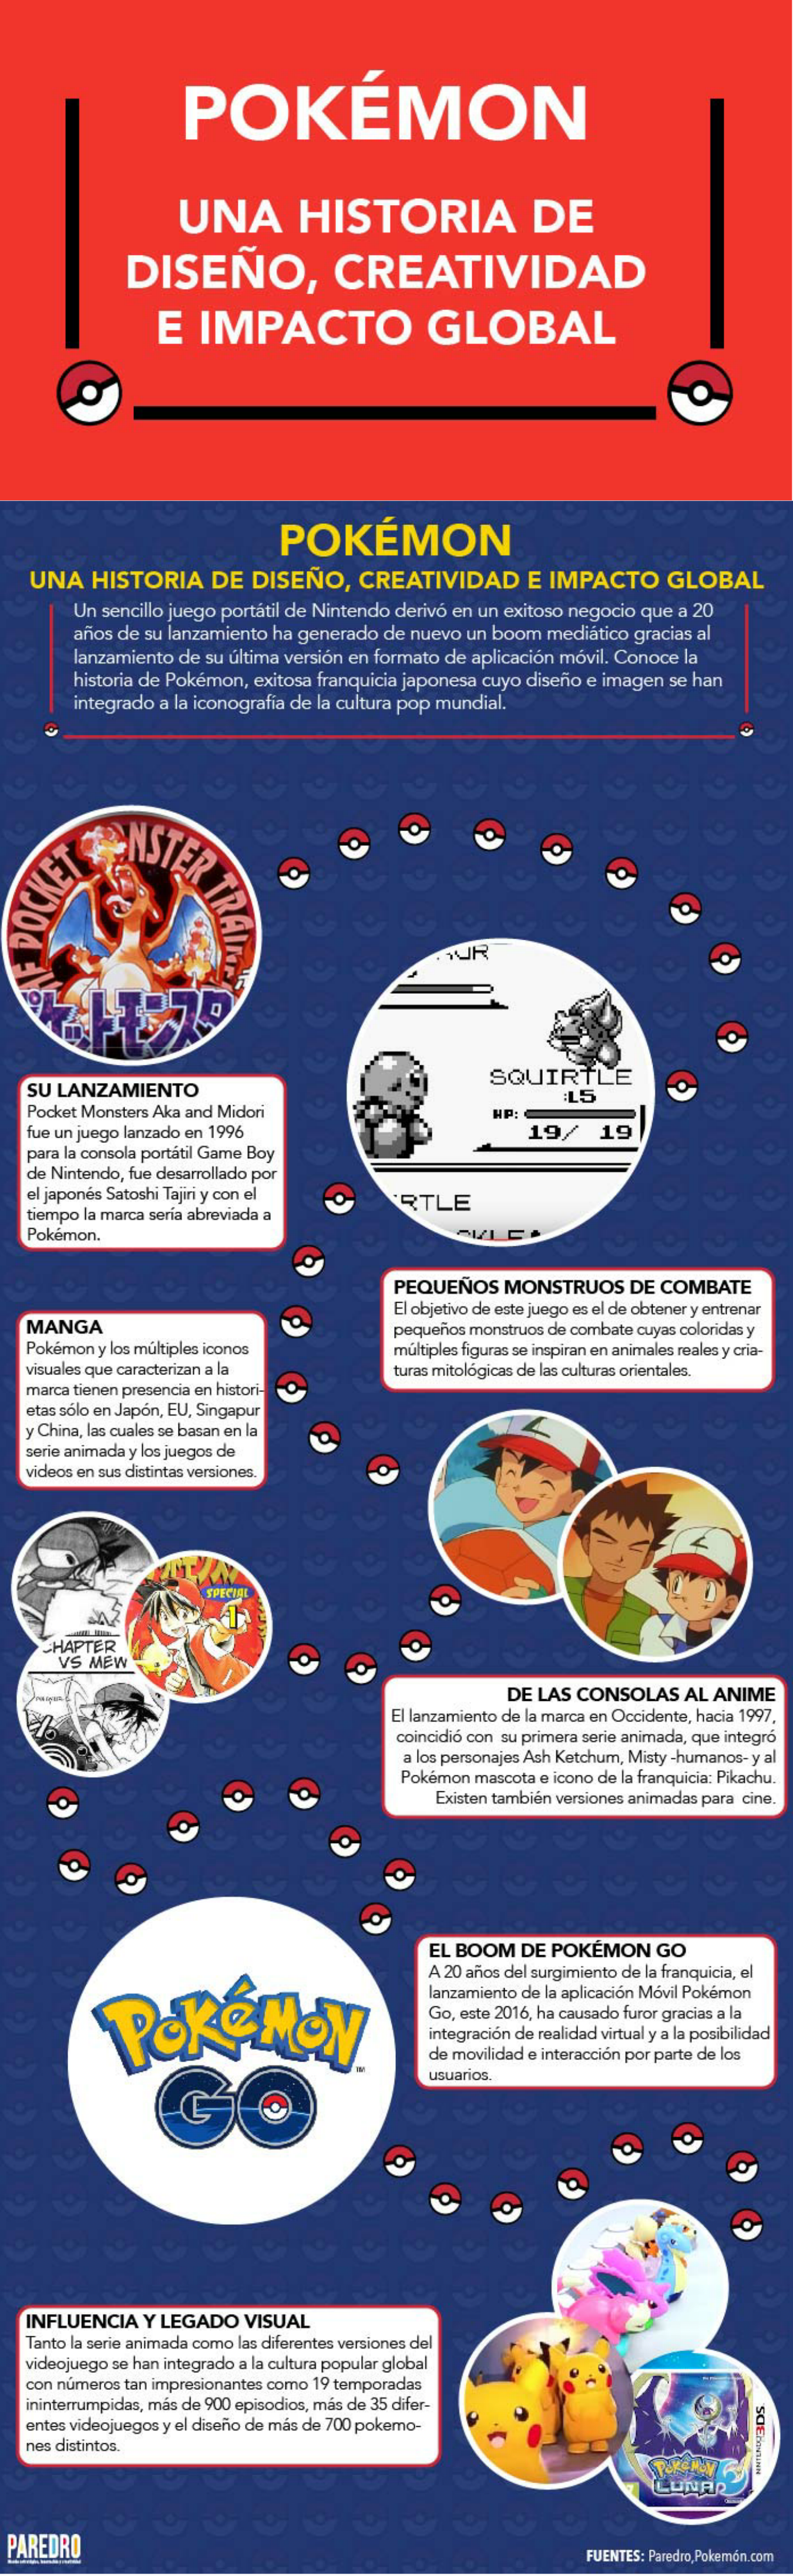 Pokemon: Diseño y Creatividad